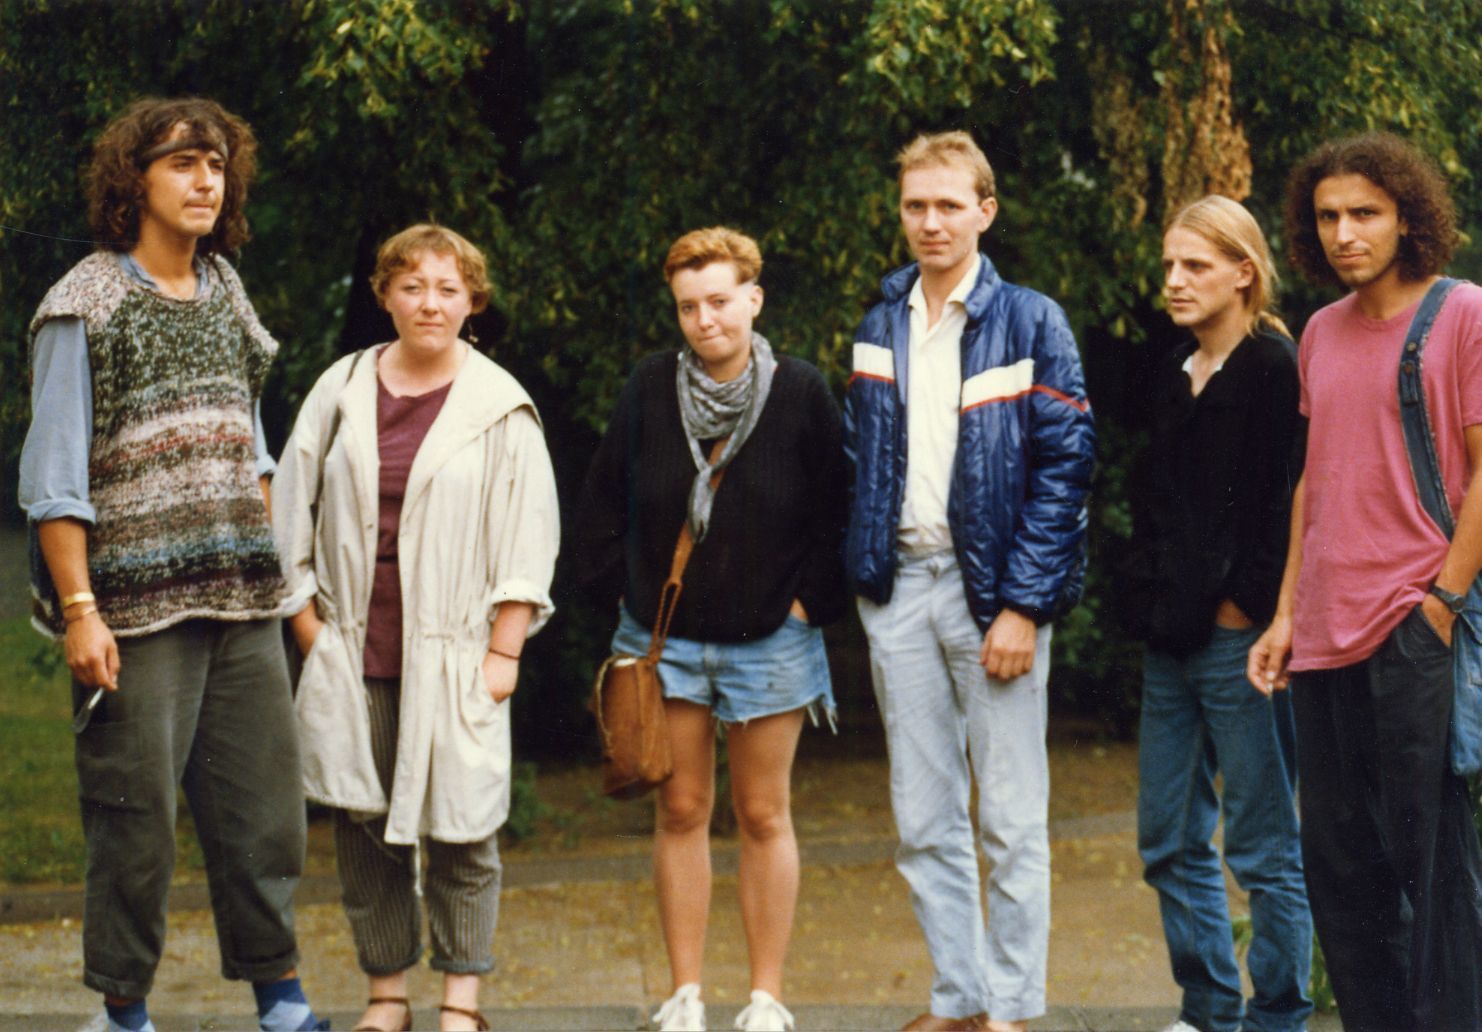 Evelyn Zupke (2. v. l.) und weitere Mitglieder des Weißenseer Friedenskreises im Sommer 1989: Das Foto ist für die Presse im Westen gedacht, falls jemand verhaftet worden wäre. V. l. n. r.: Ralph Skörries, Evelyn Zupke, Beate, Gunter Seifert (IM des MfS), Klaus Kupler und Frank Pfeiffer.